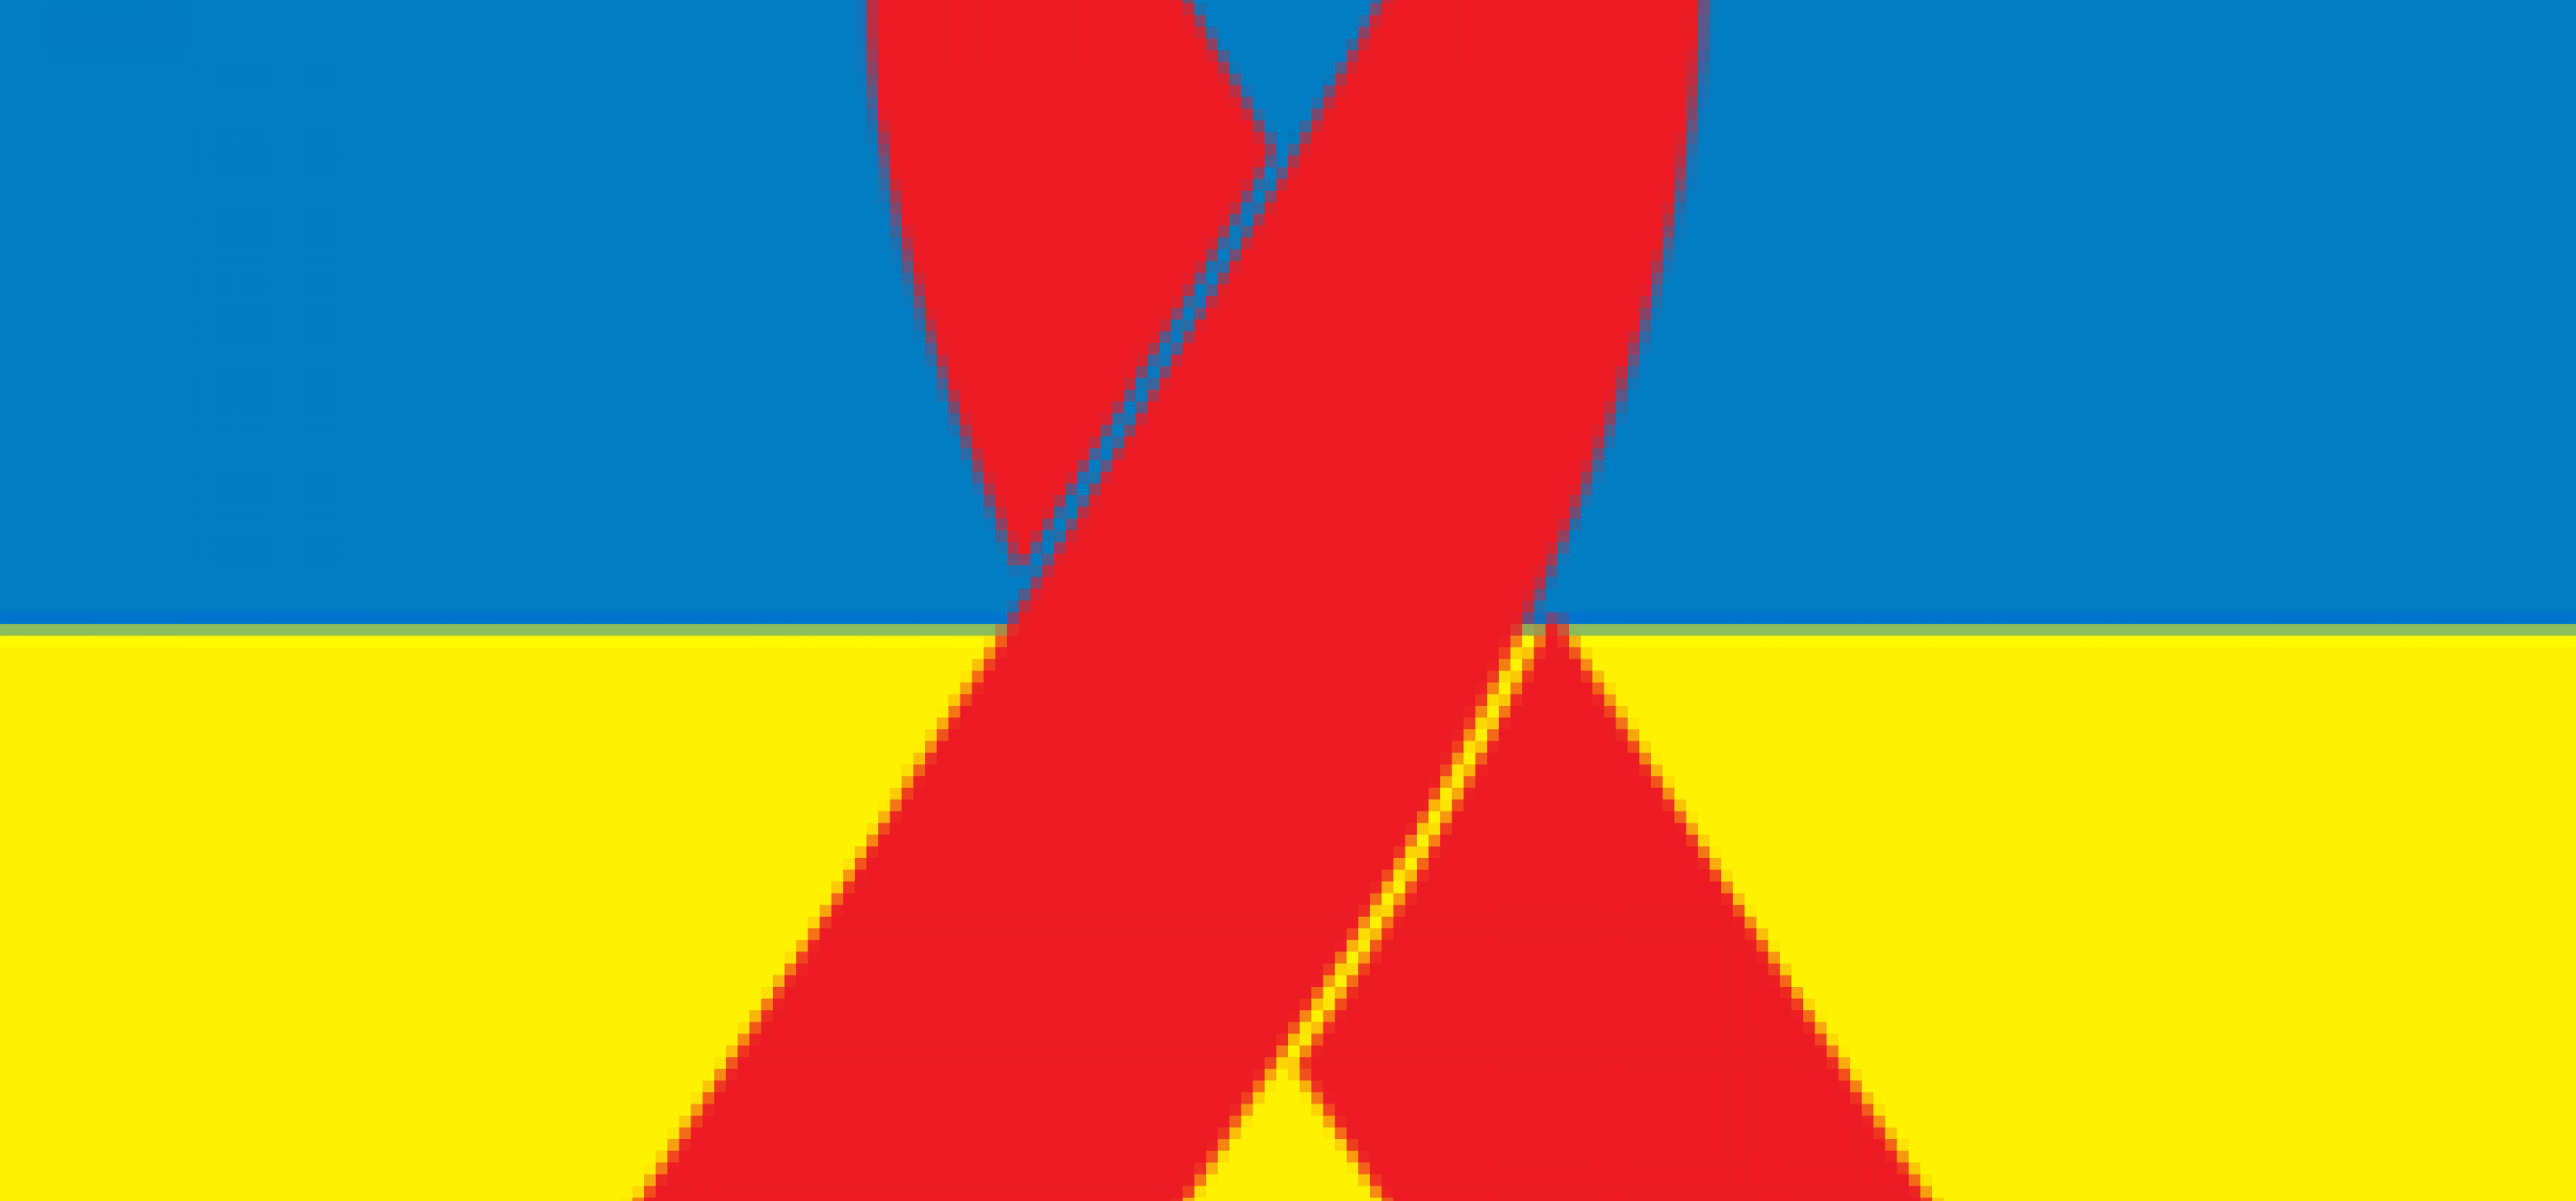 Ukrainische Flagge mit Roter Schleife